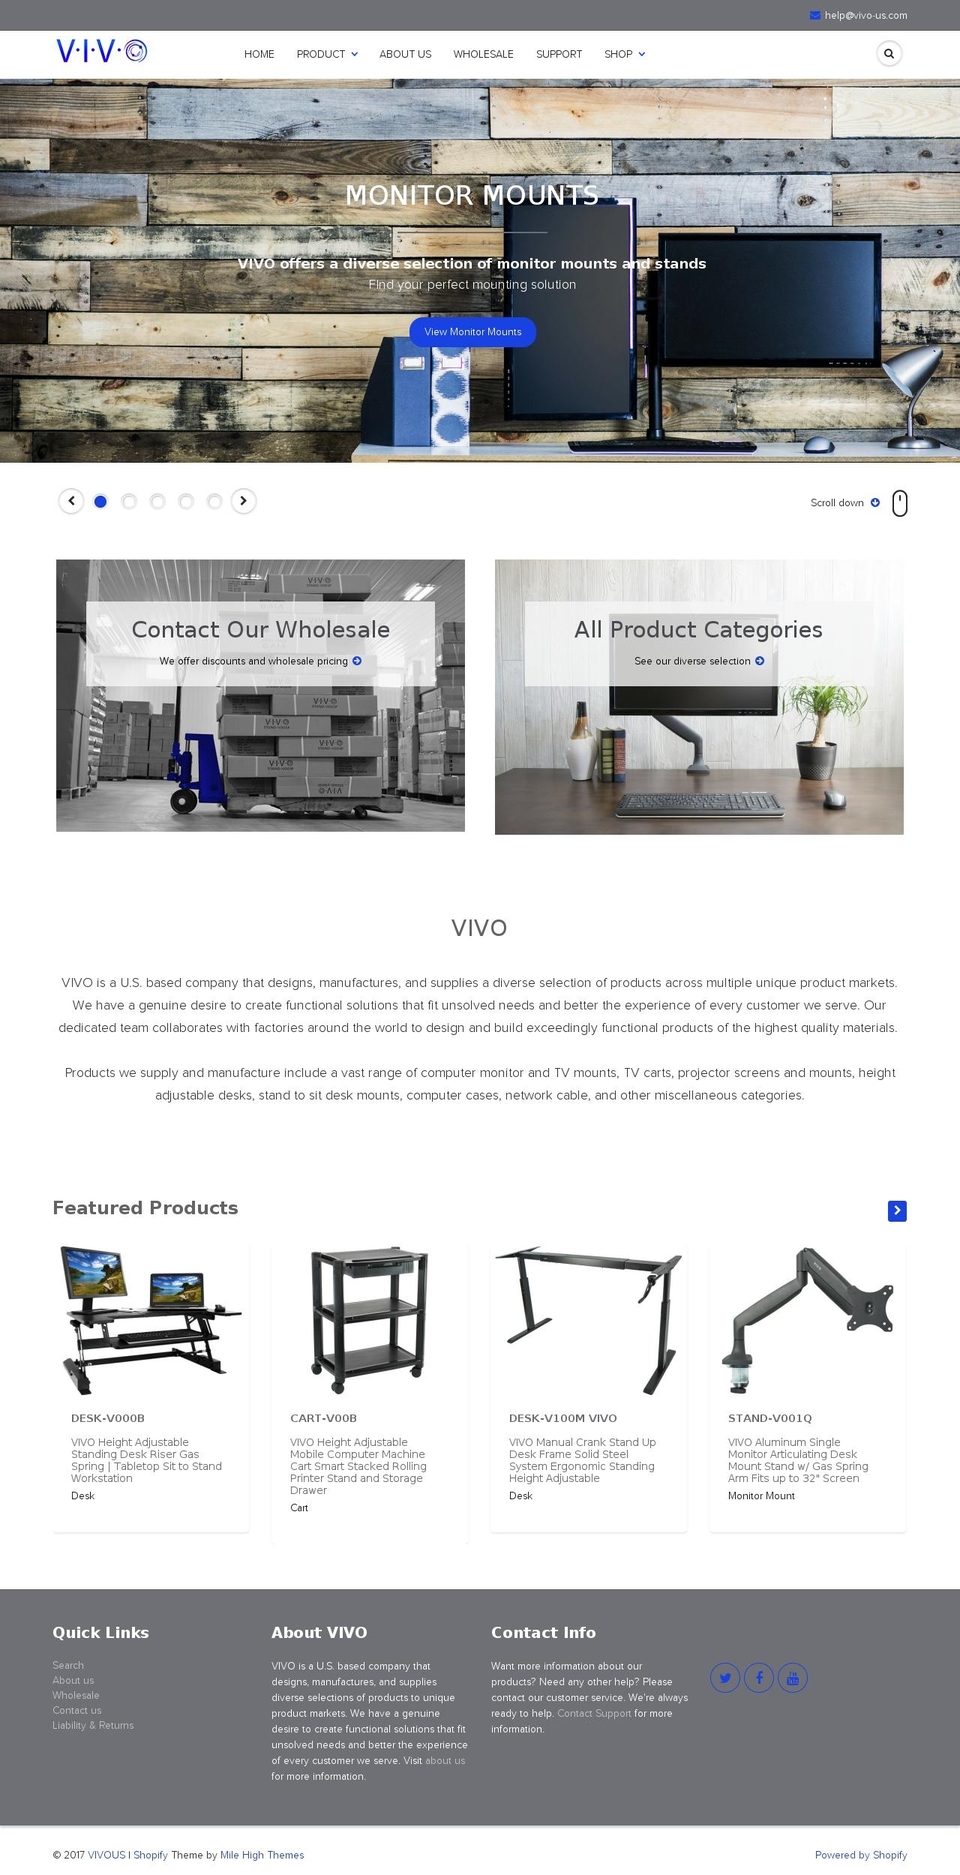 vivo-us.com shopify website screenshot